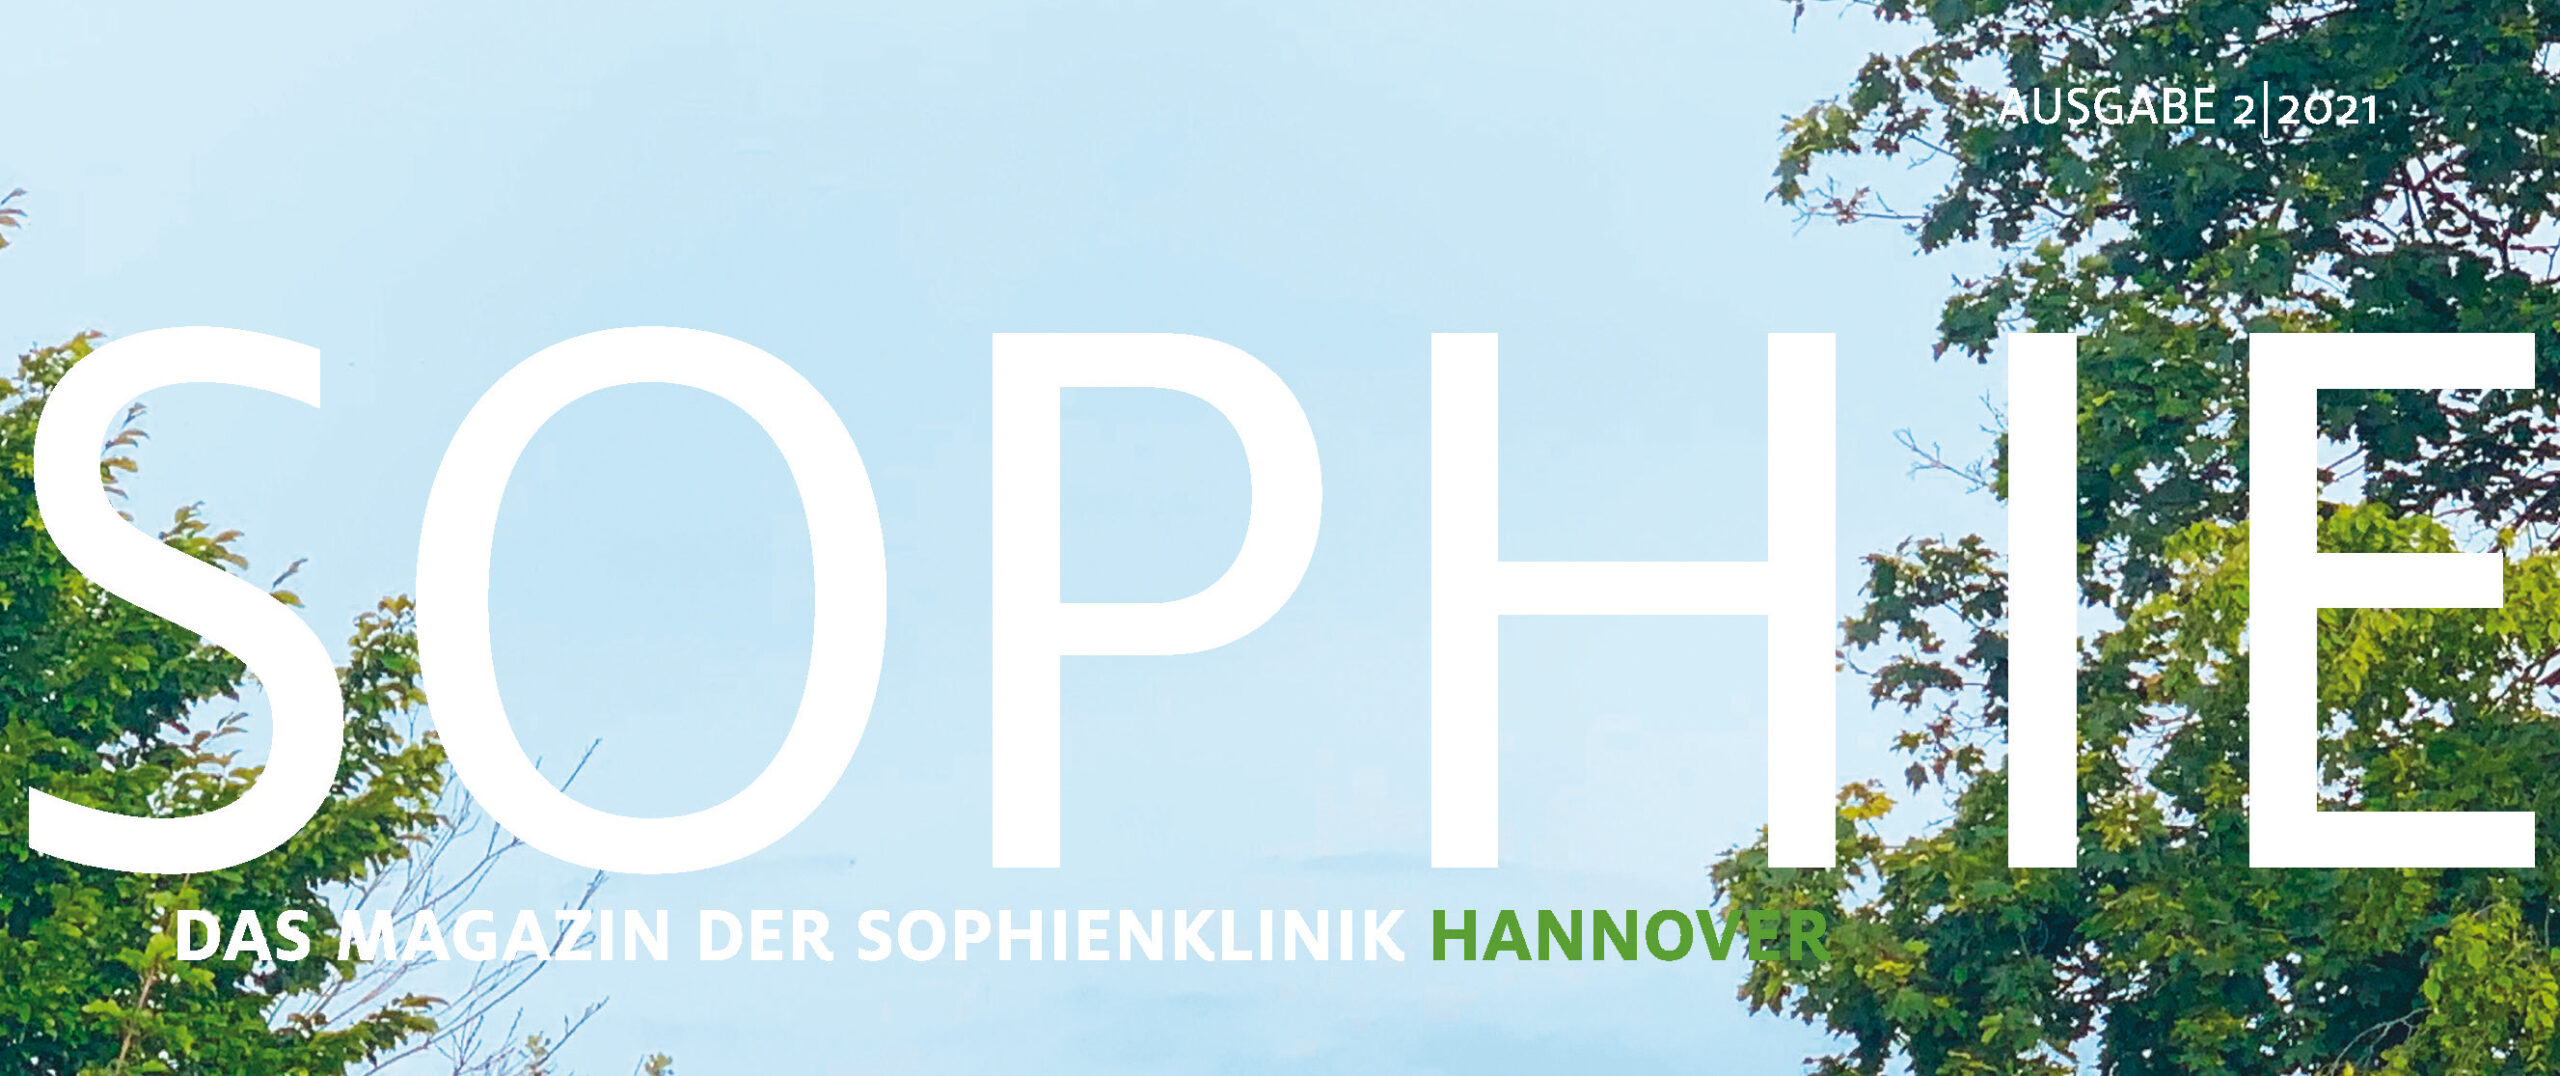 Aktuelles Klinikmagazin zeigt die Sophienklinik im Profil